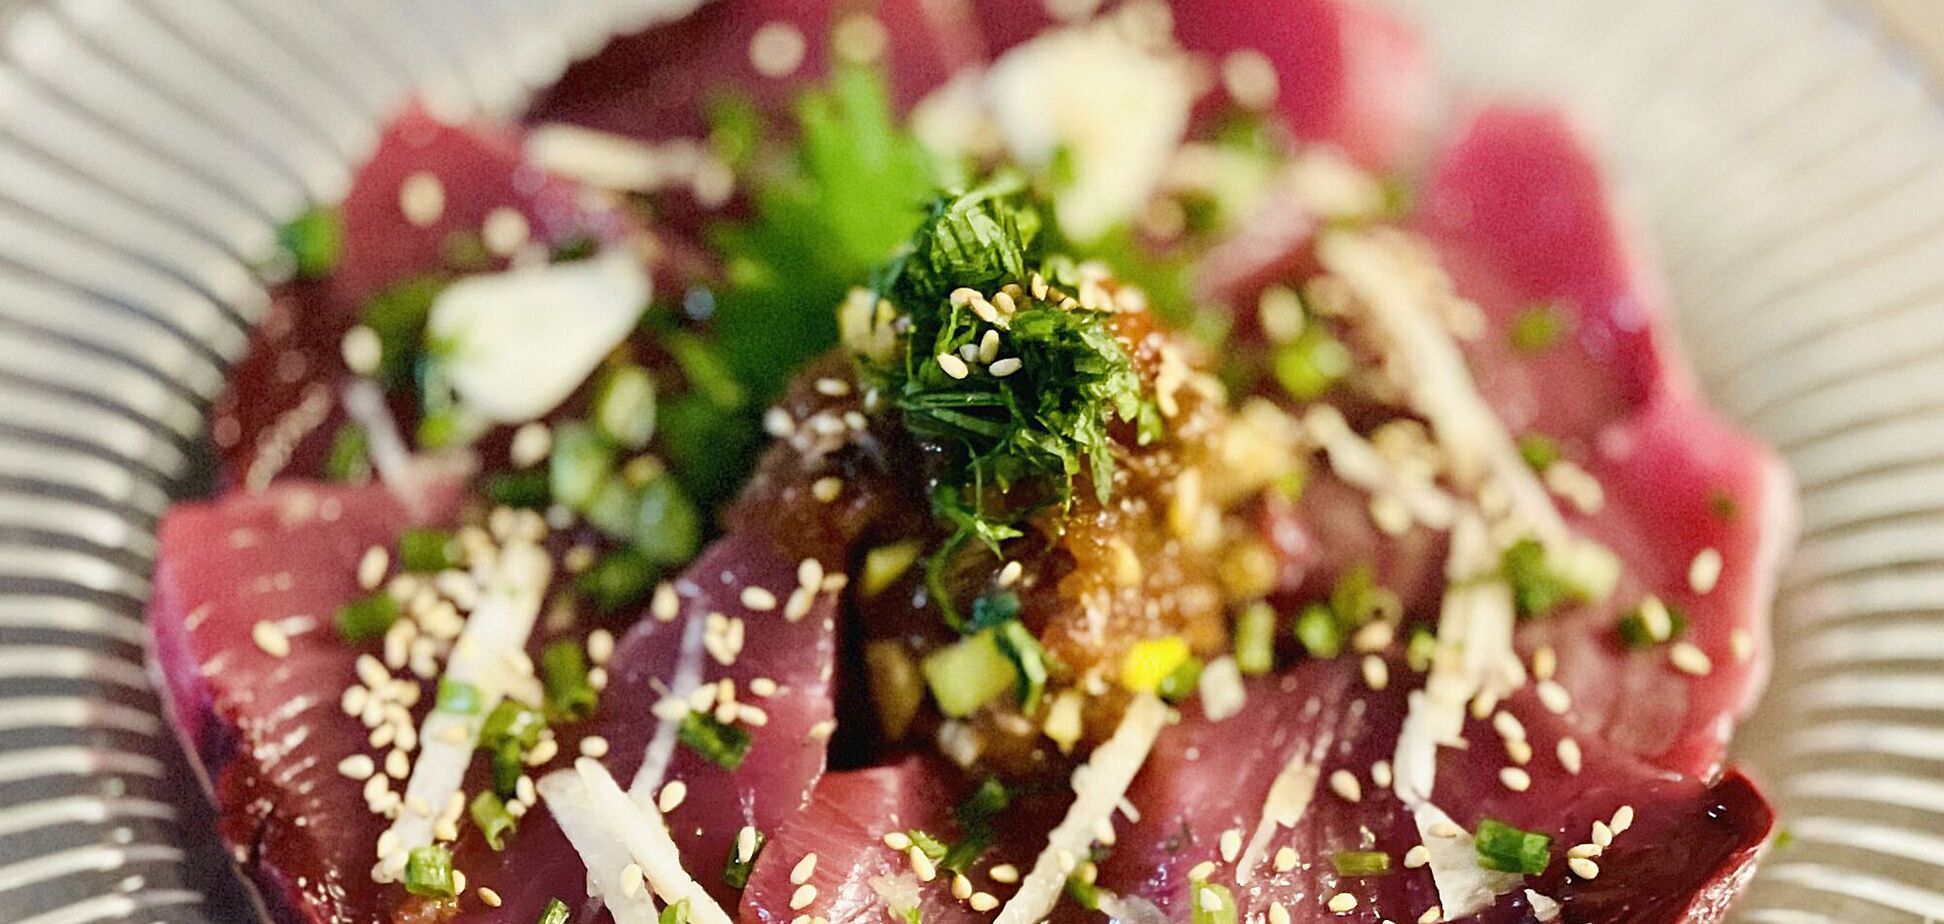 Карпаччо из тунца: как сделать ресторанное блюдо в домашних условиях